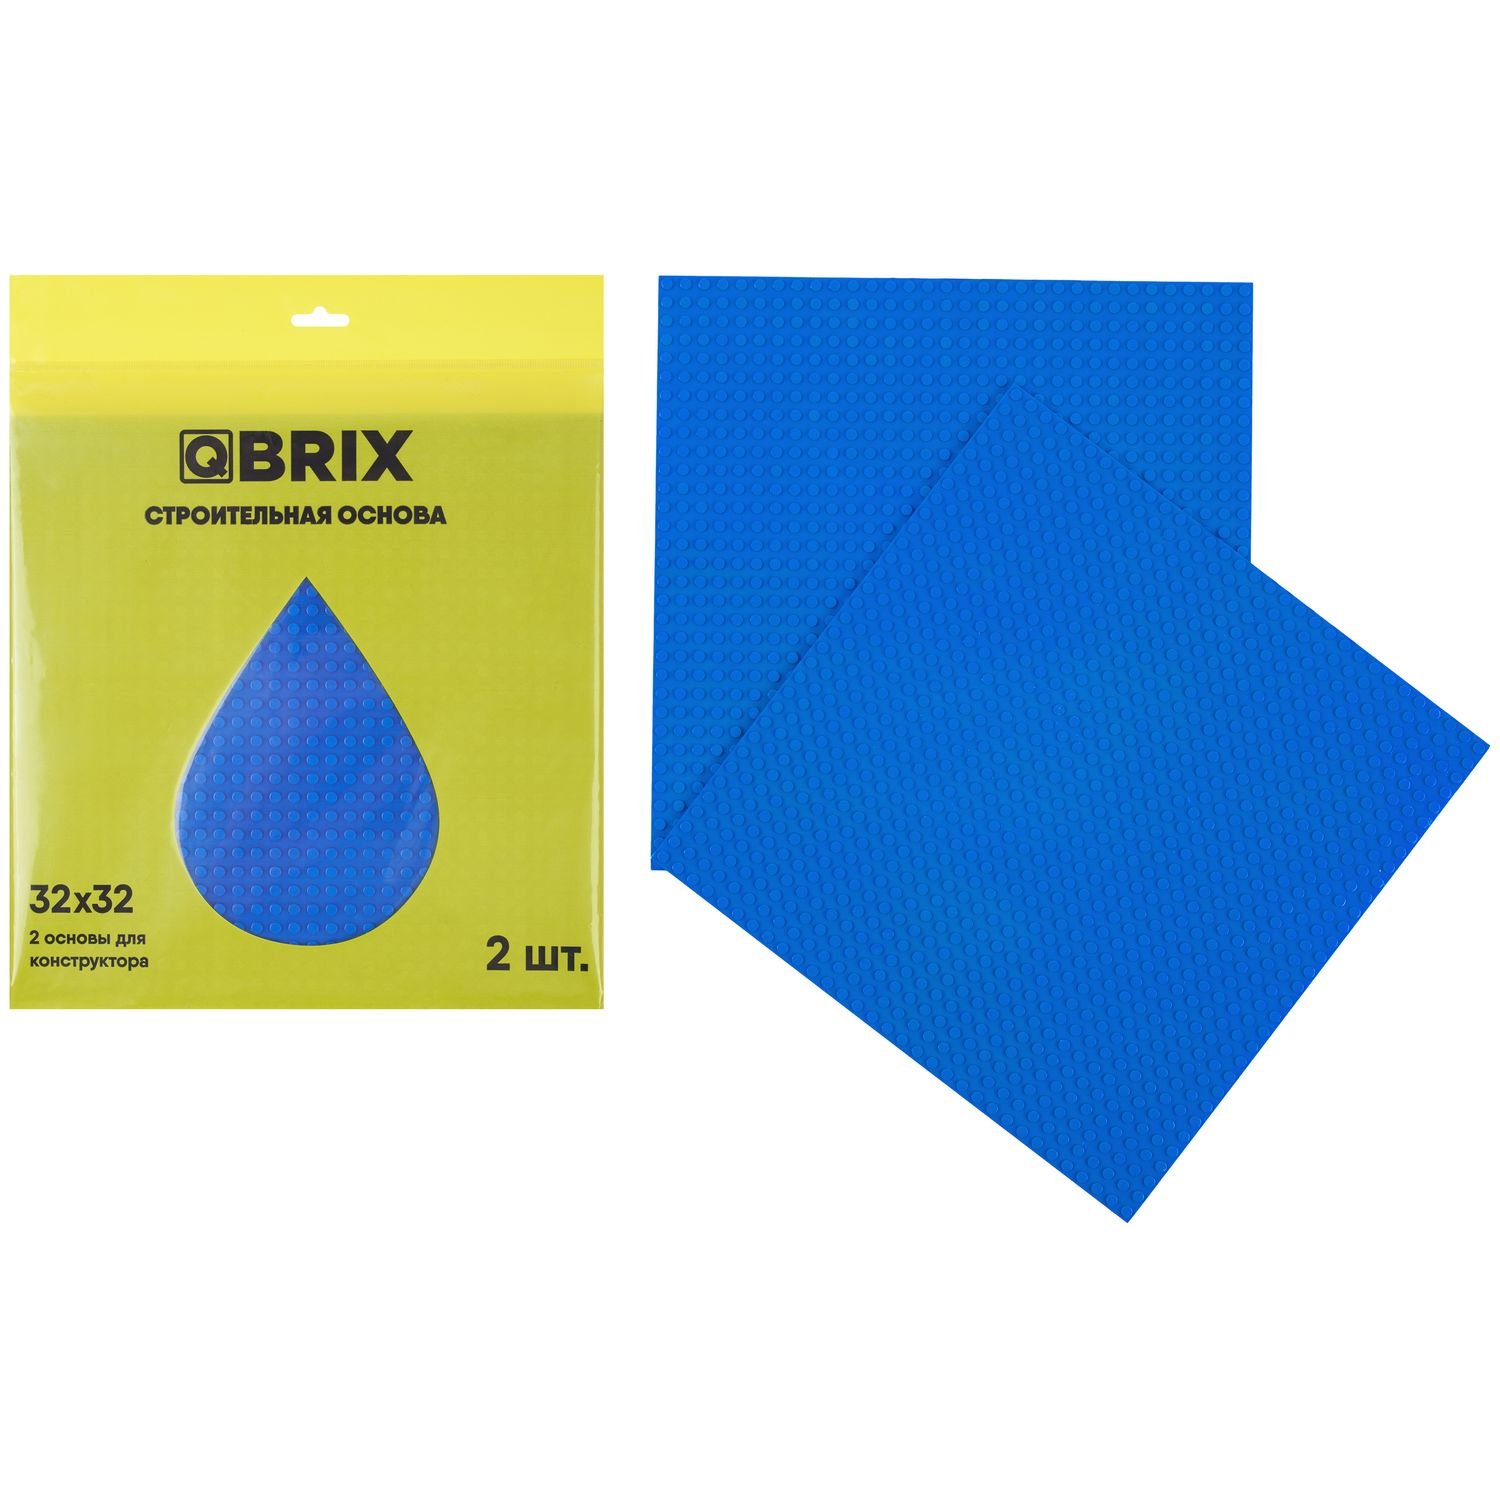 Строительная пластина QBRIX (набор из 2-х штук), цвет: синий QBRIX10002 пластина основание для конструктора 40 × 40 см синий